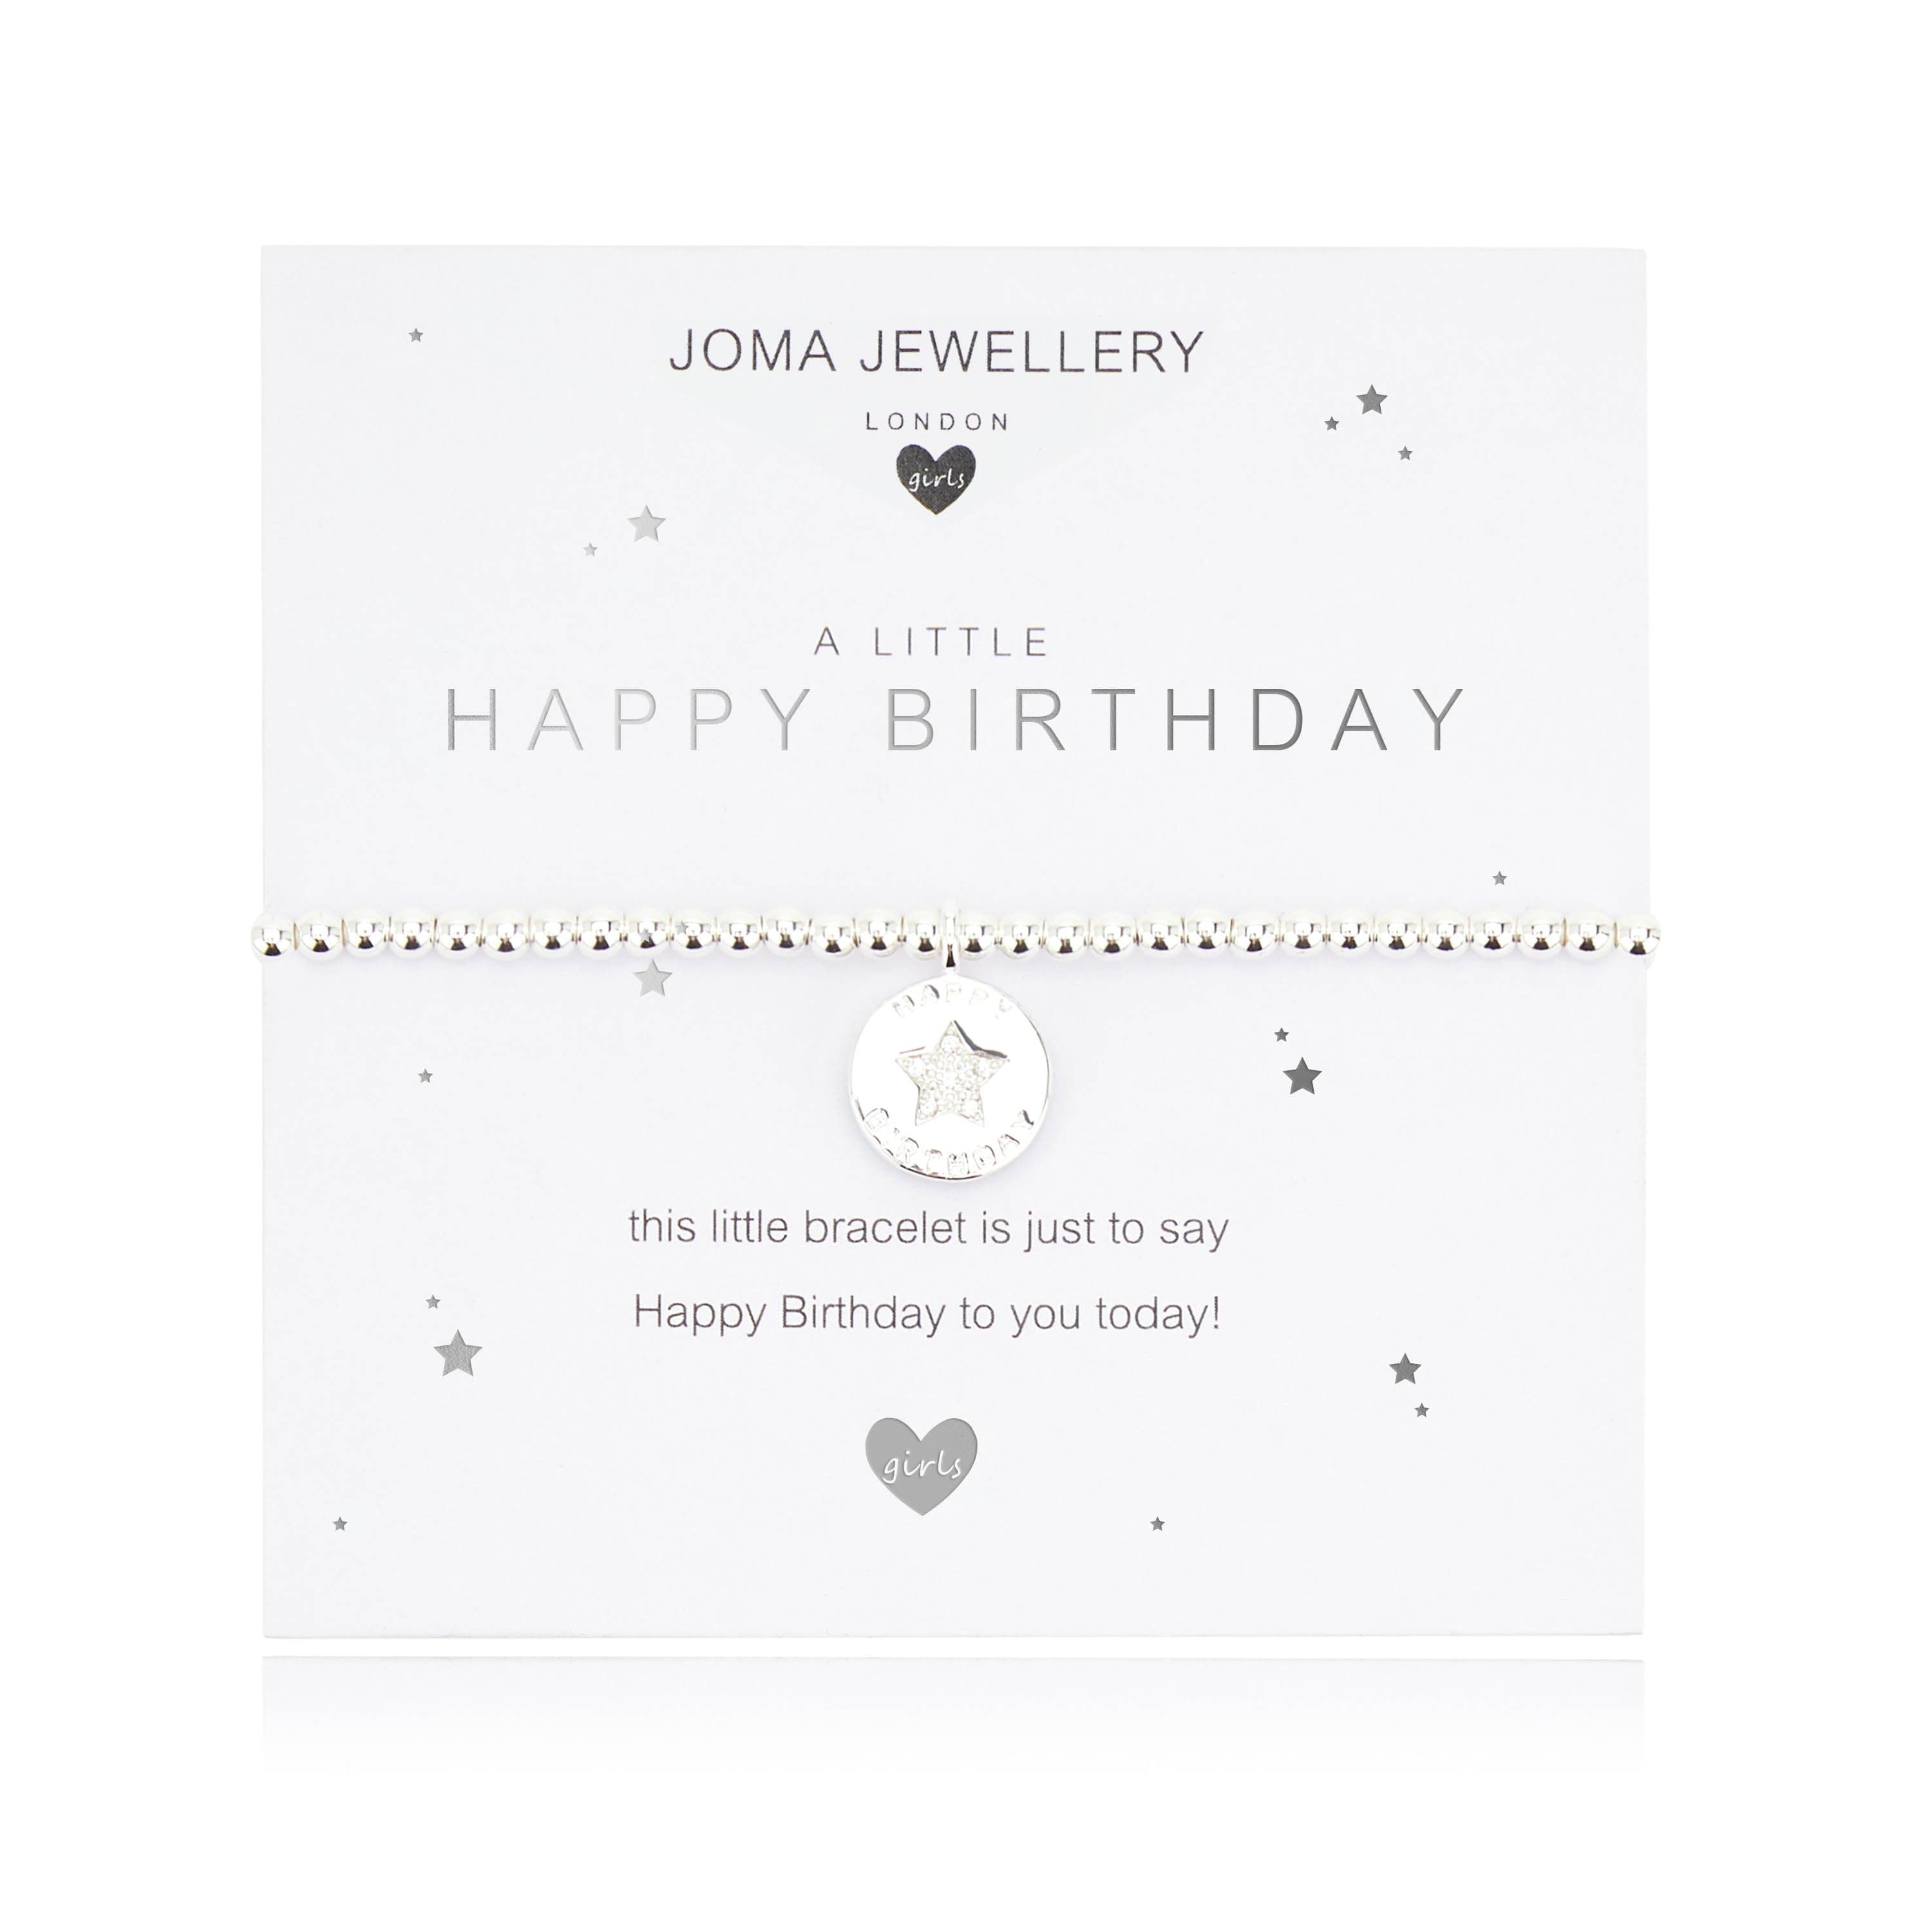 Joma Jewellery Childrens Bracelet Joma Jewellery Childrens Bracelet - A Little Happy Birthday